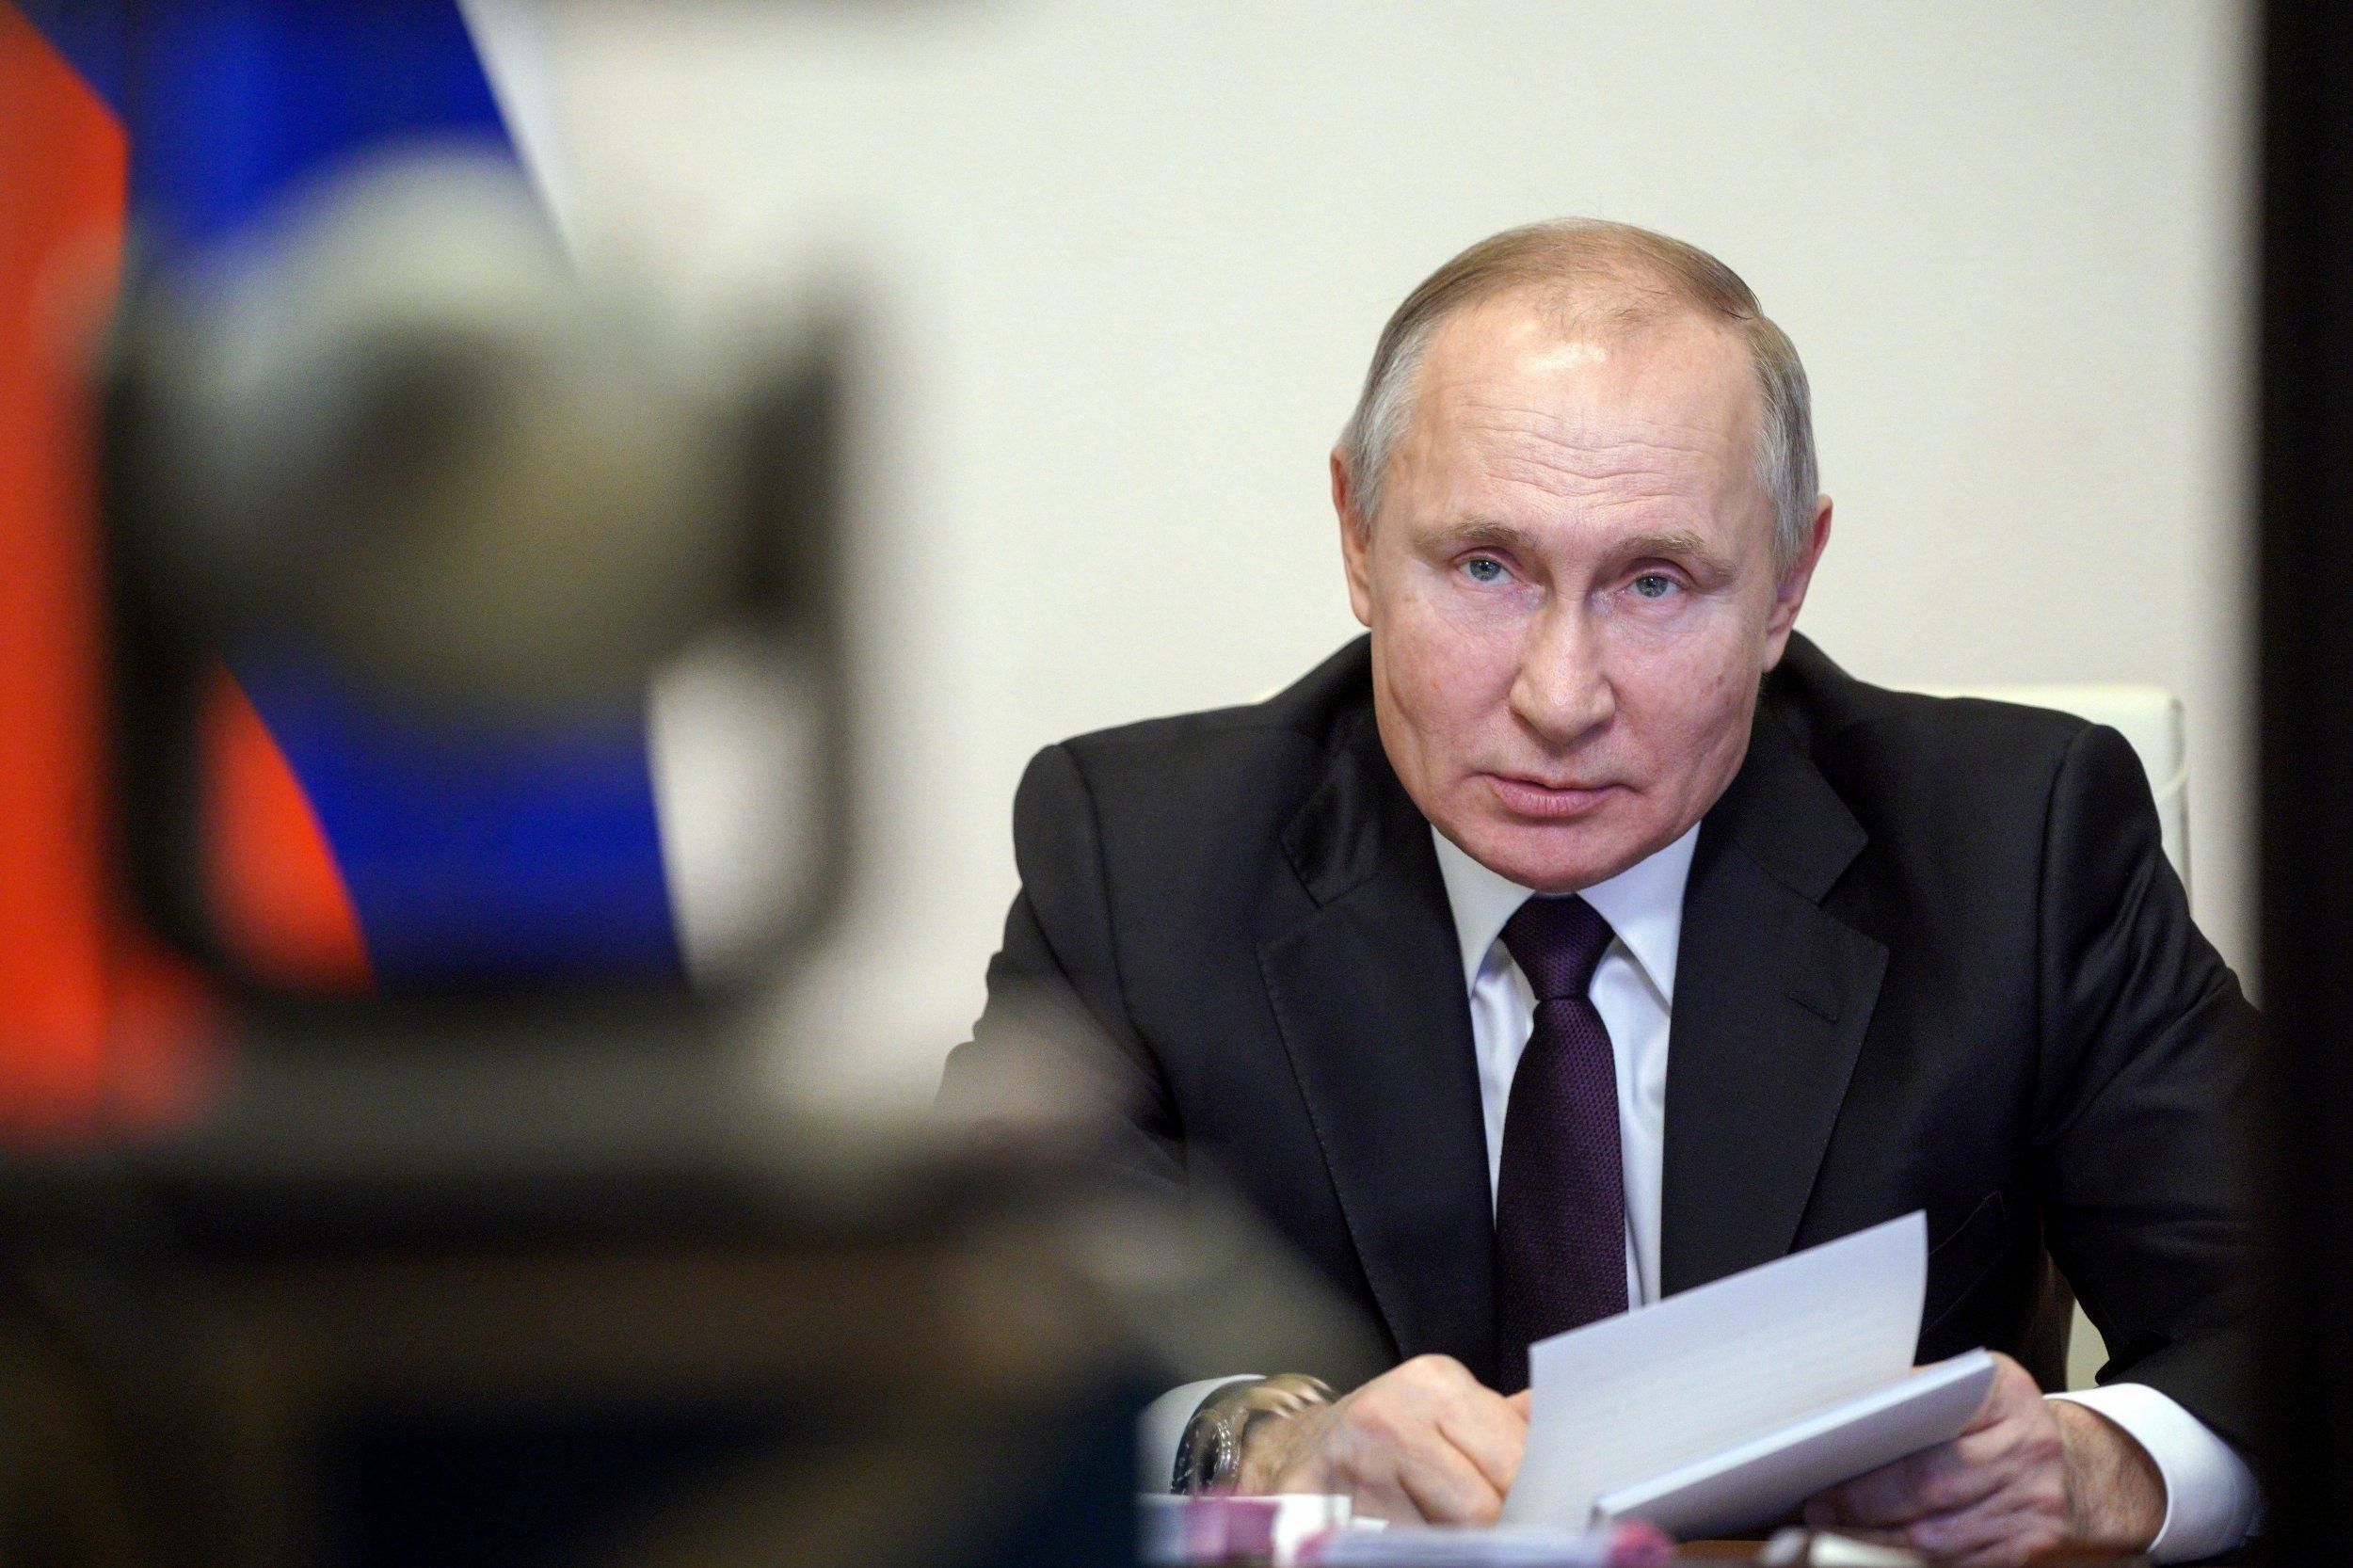 Путин готов к разным тактическим проявлениям, – американский журналист о намерениях Кремля